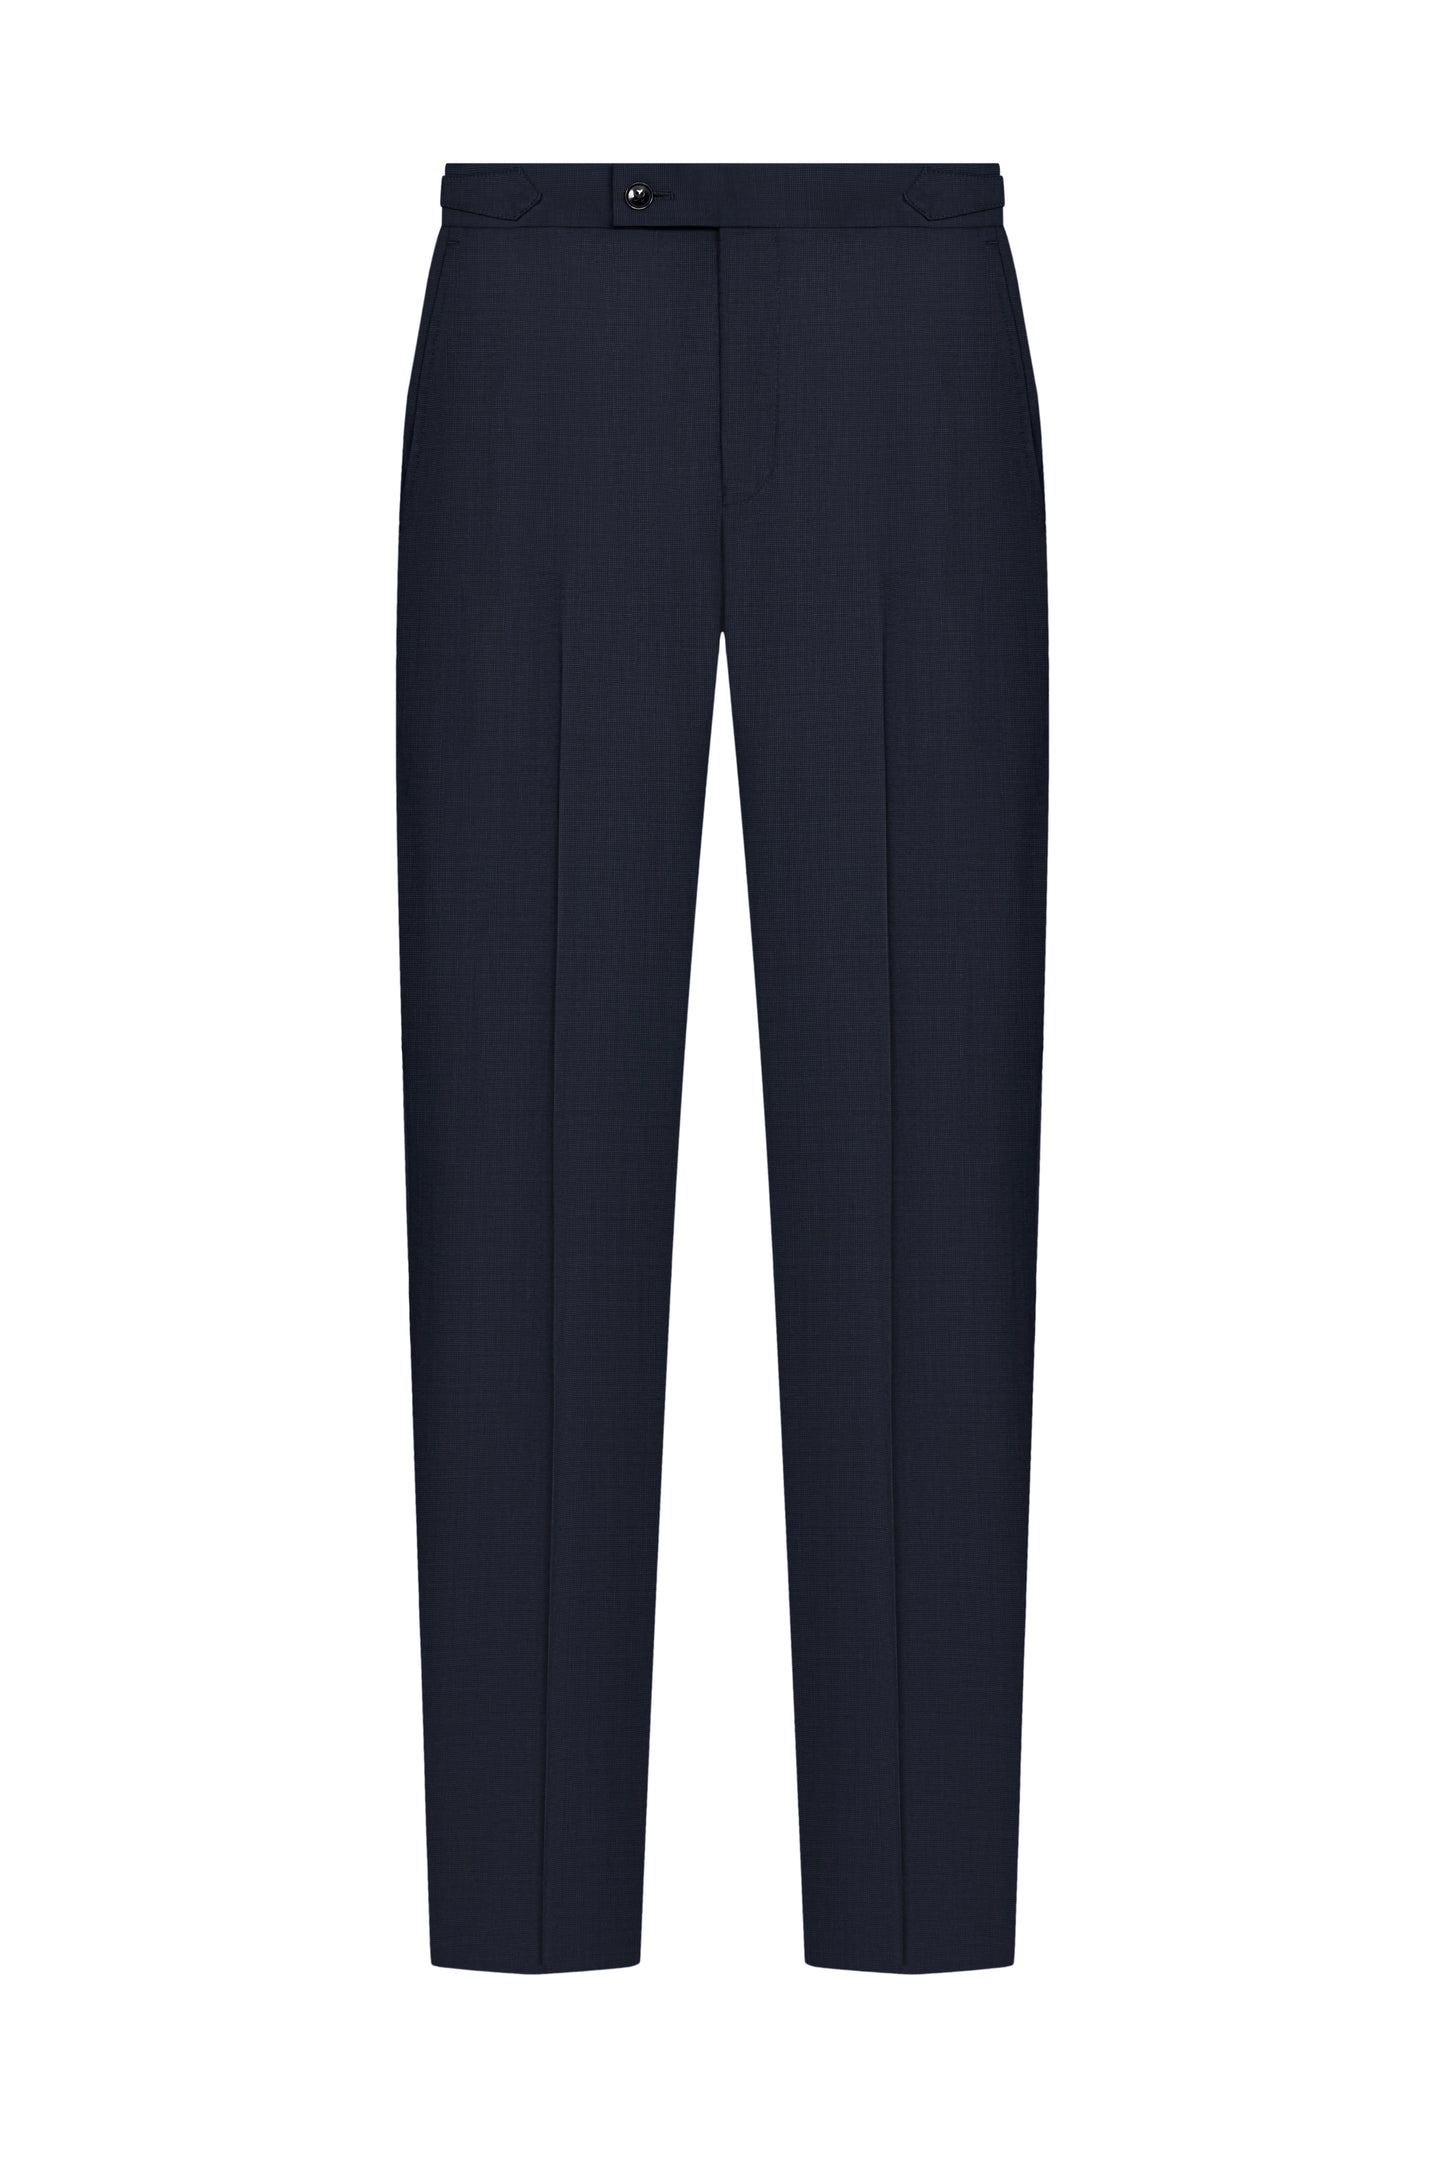 ES Essentials Navy Pinpoint Custom Trouser